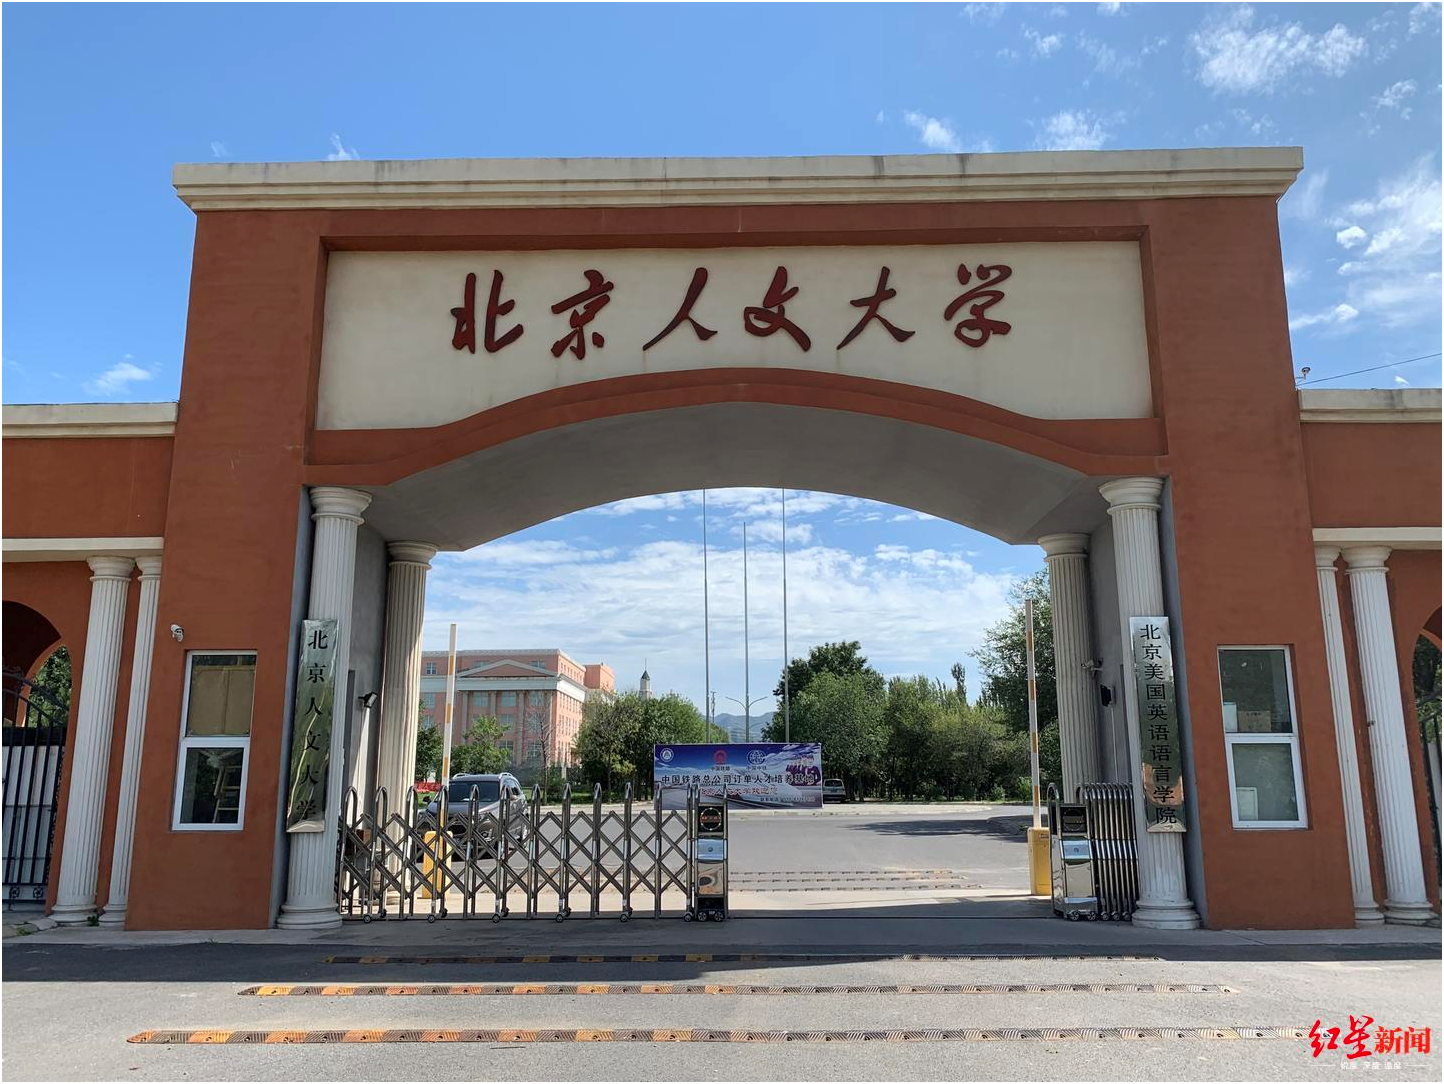 创校35年的北京人文大学今何在?原校址已被私营医院使用